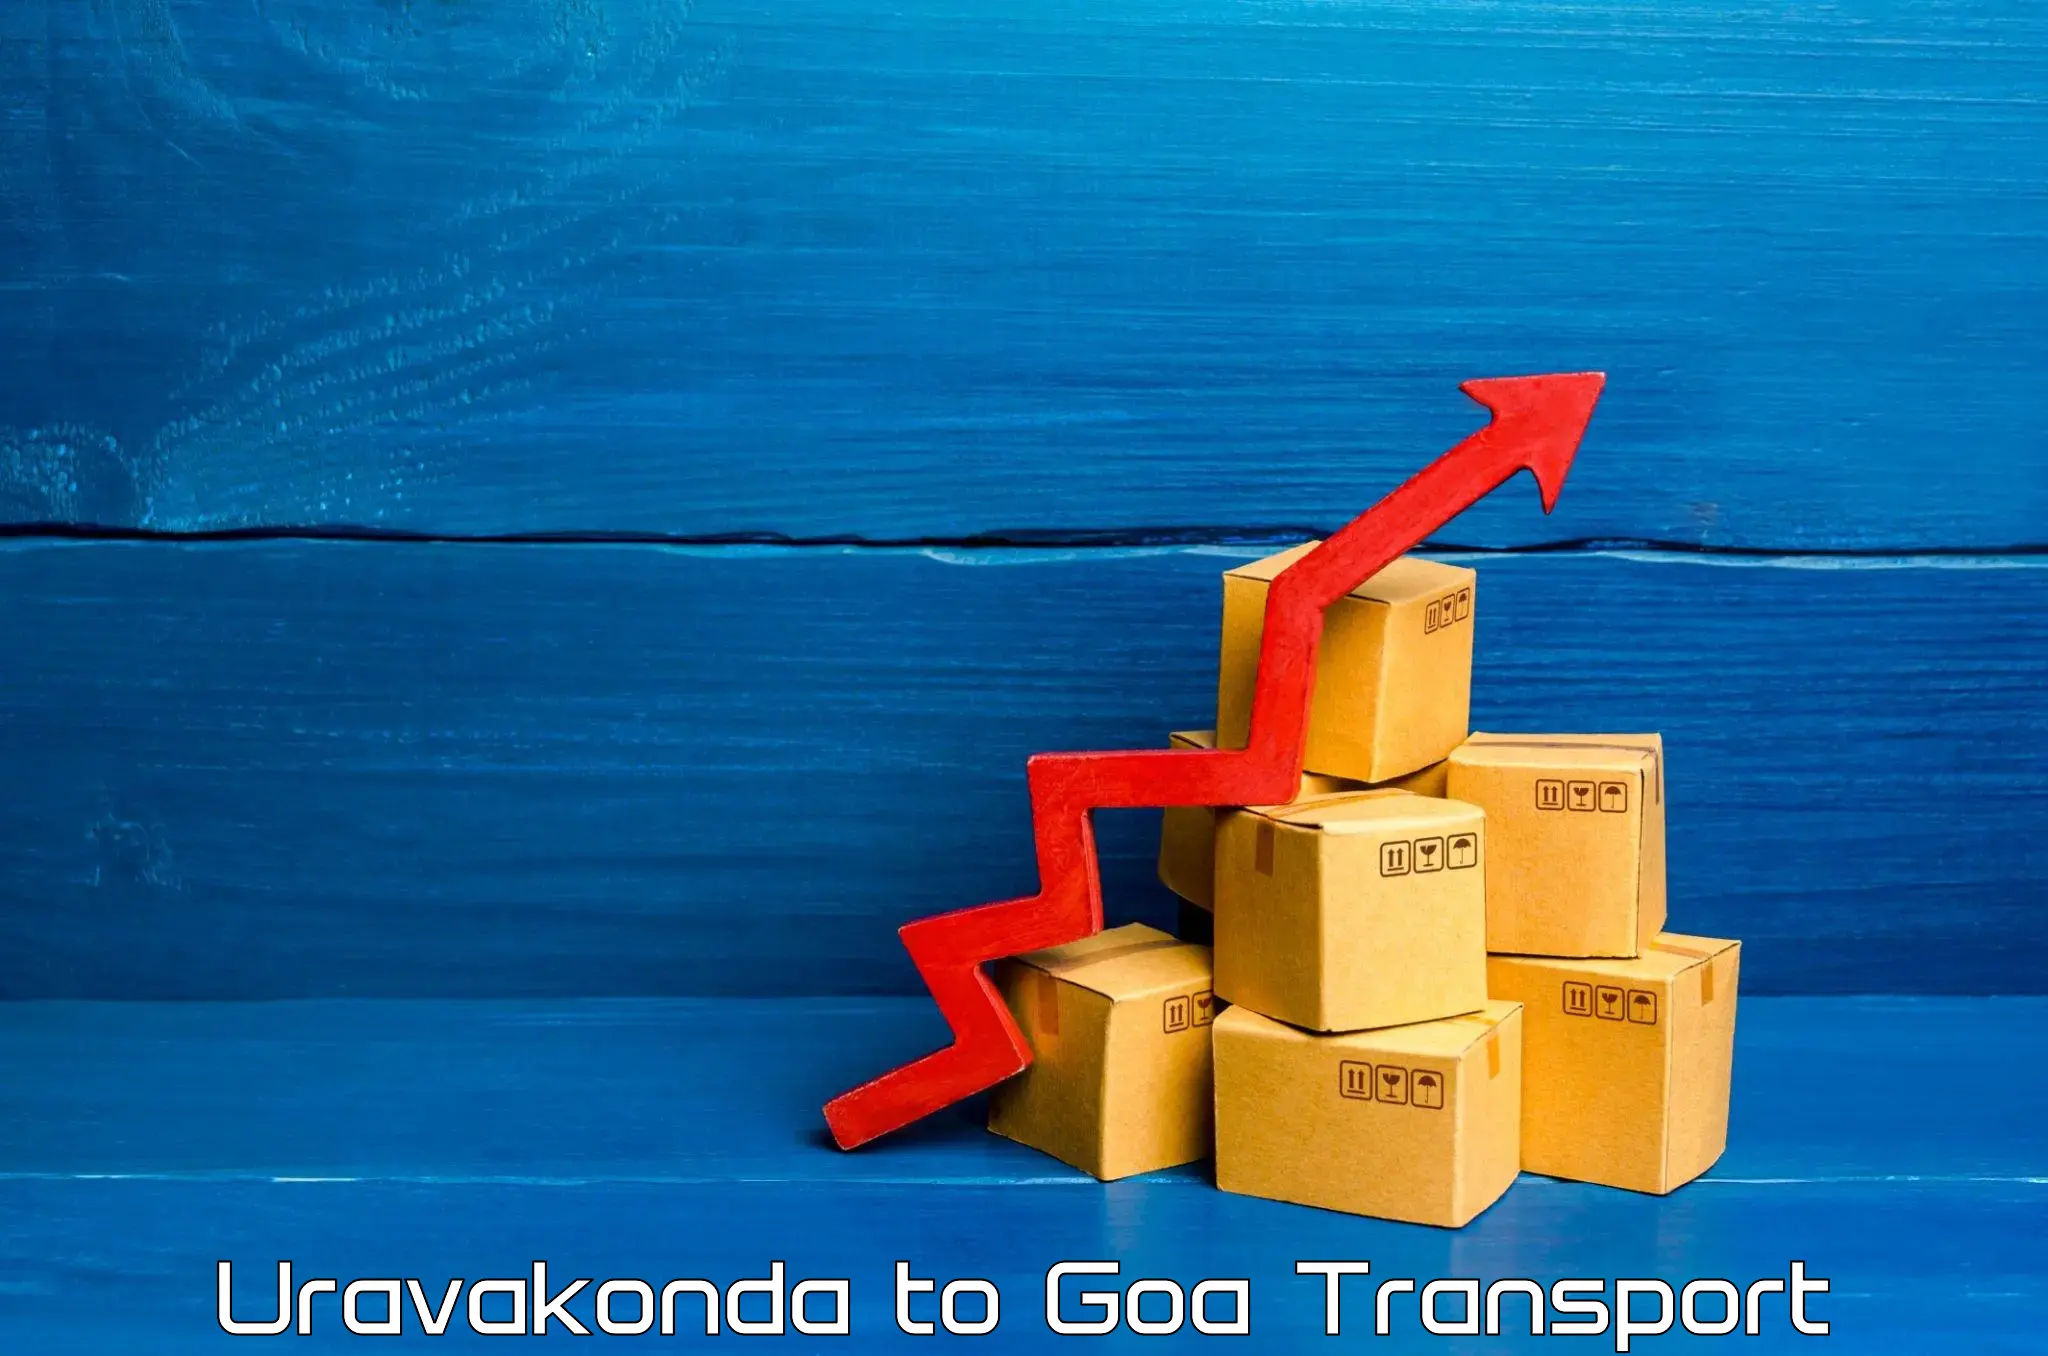 Online transport service Uravakonda to NIT Goa